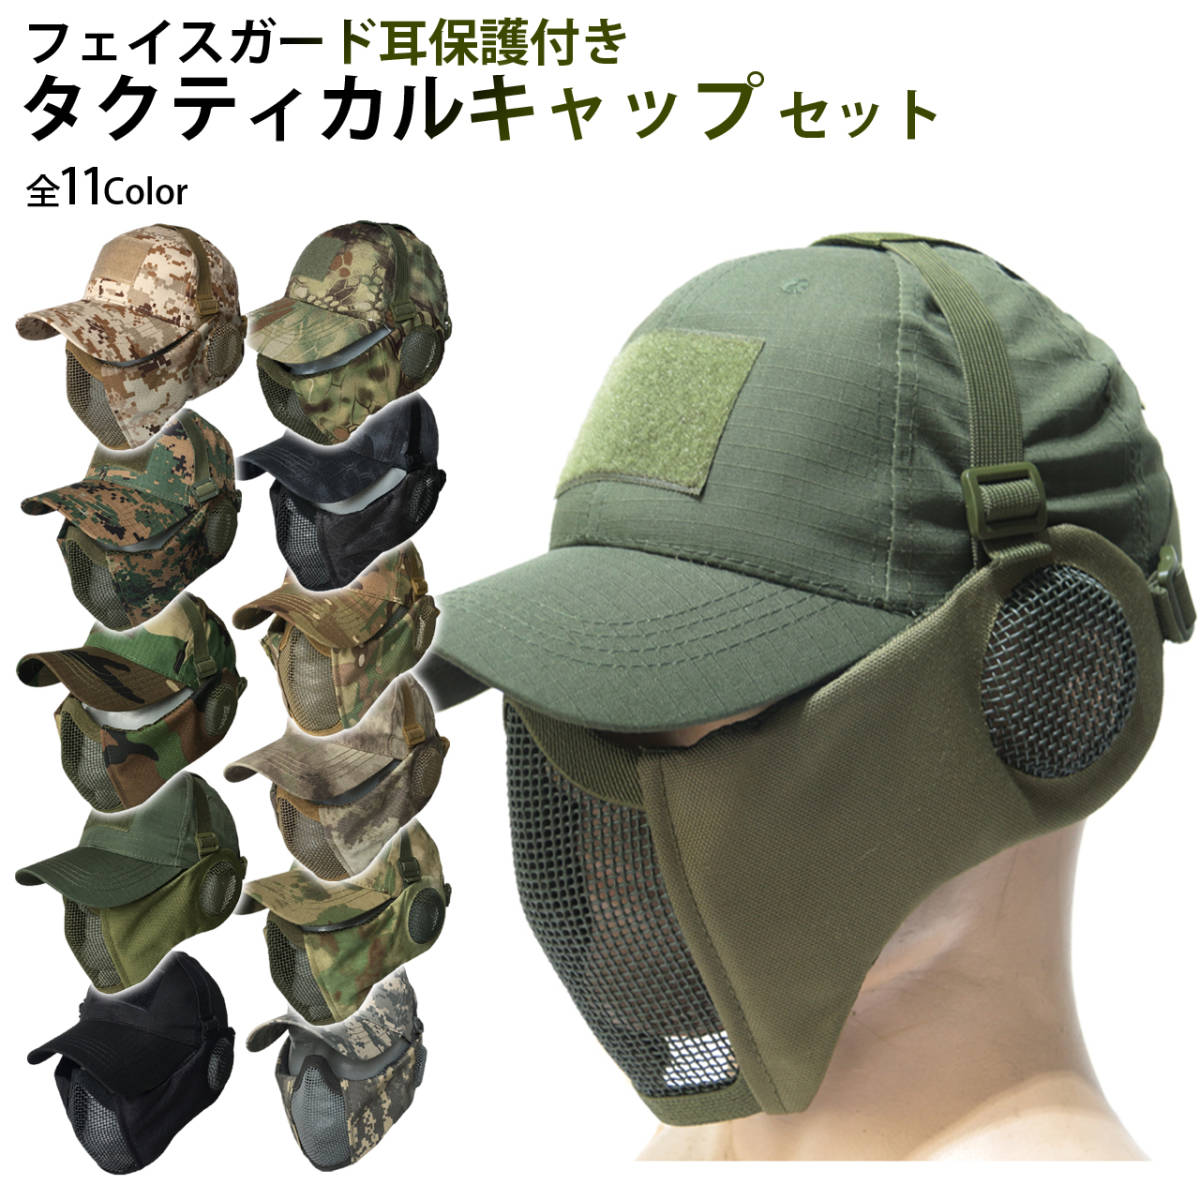 サバゲー マスク フェイスガード タクティカル キャップ セット 耳保護付き サバイバルゲーム 装備 (ブラック)_画像2